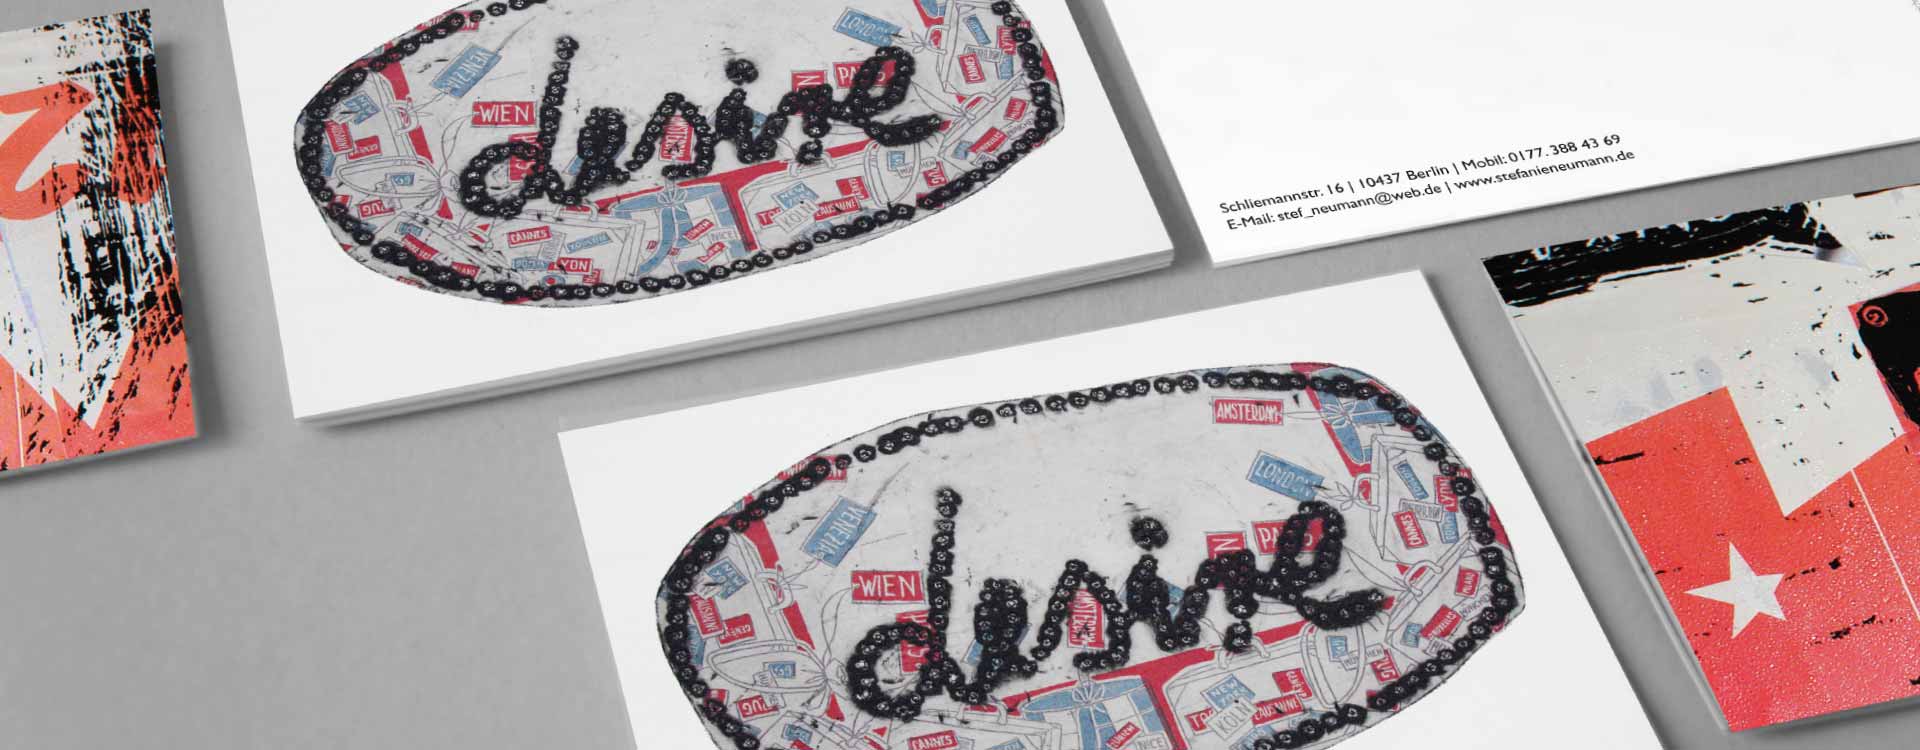 Postcards for Stefanie Neumann; Design: Kattrin Richter | Graphic Design Studio